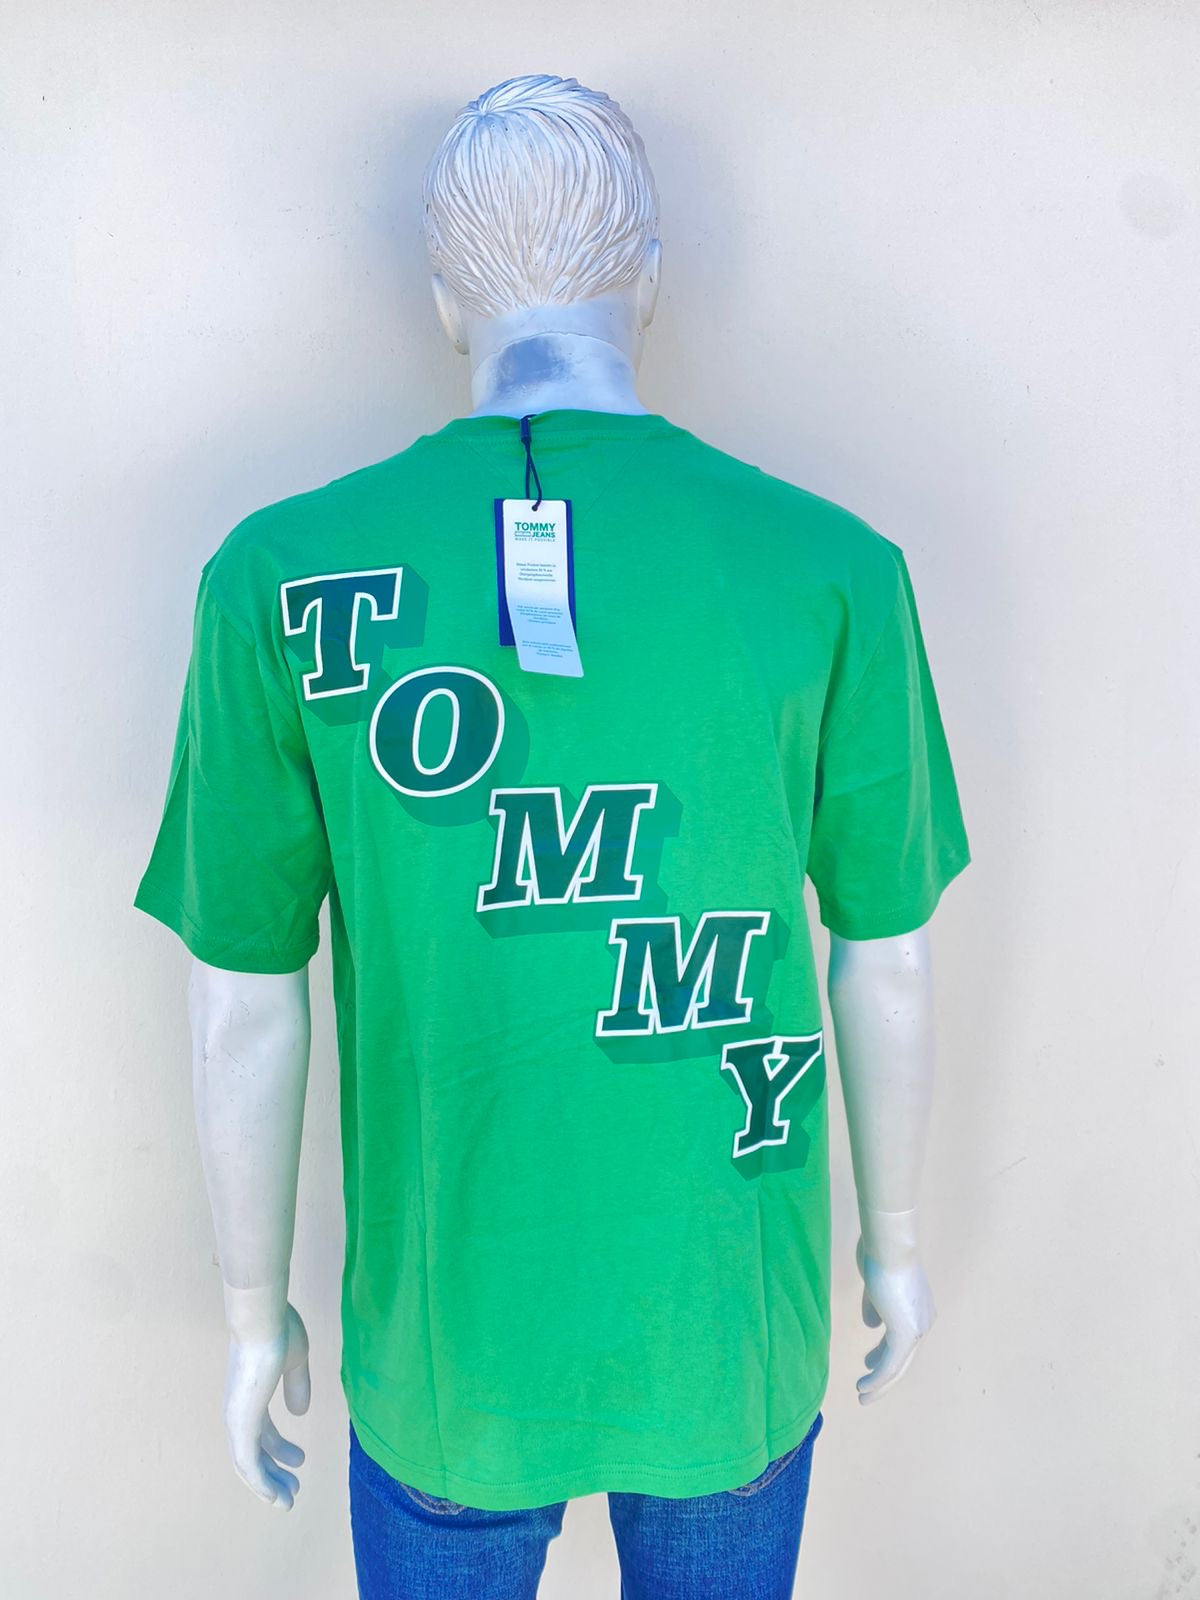 T-shirt Tommy Hilfiger original verde con letras TOMMY en la parte trasera.